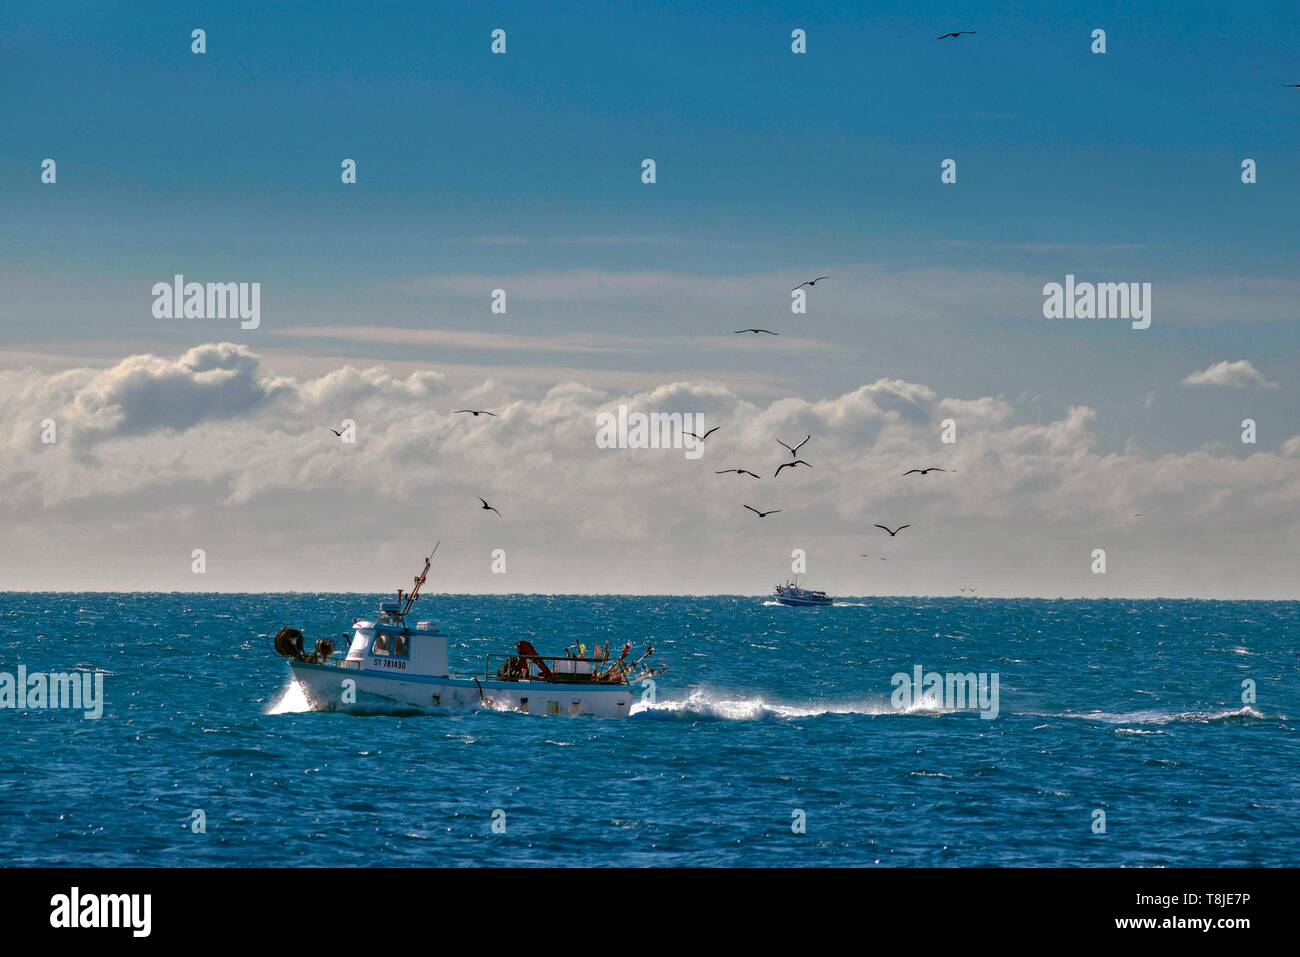 Francia, Herault, Agde, capo di Agde, la pesca in barca seguita da uccelli Foto Stock